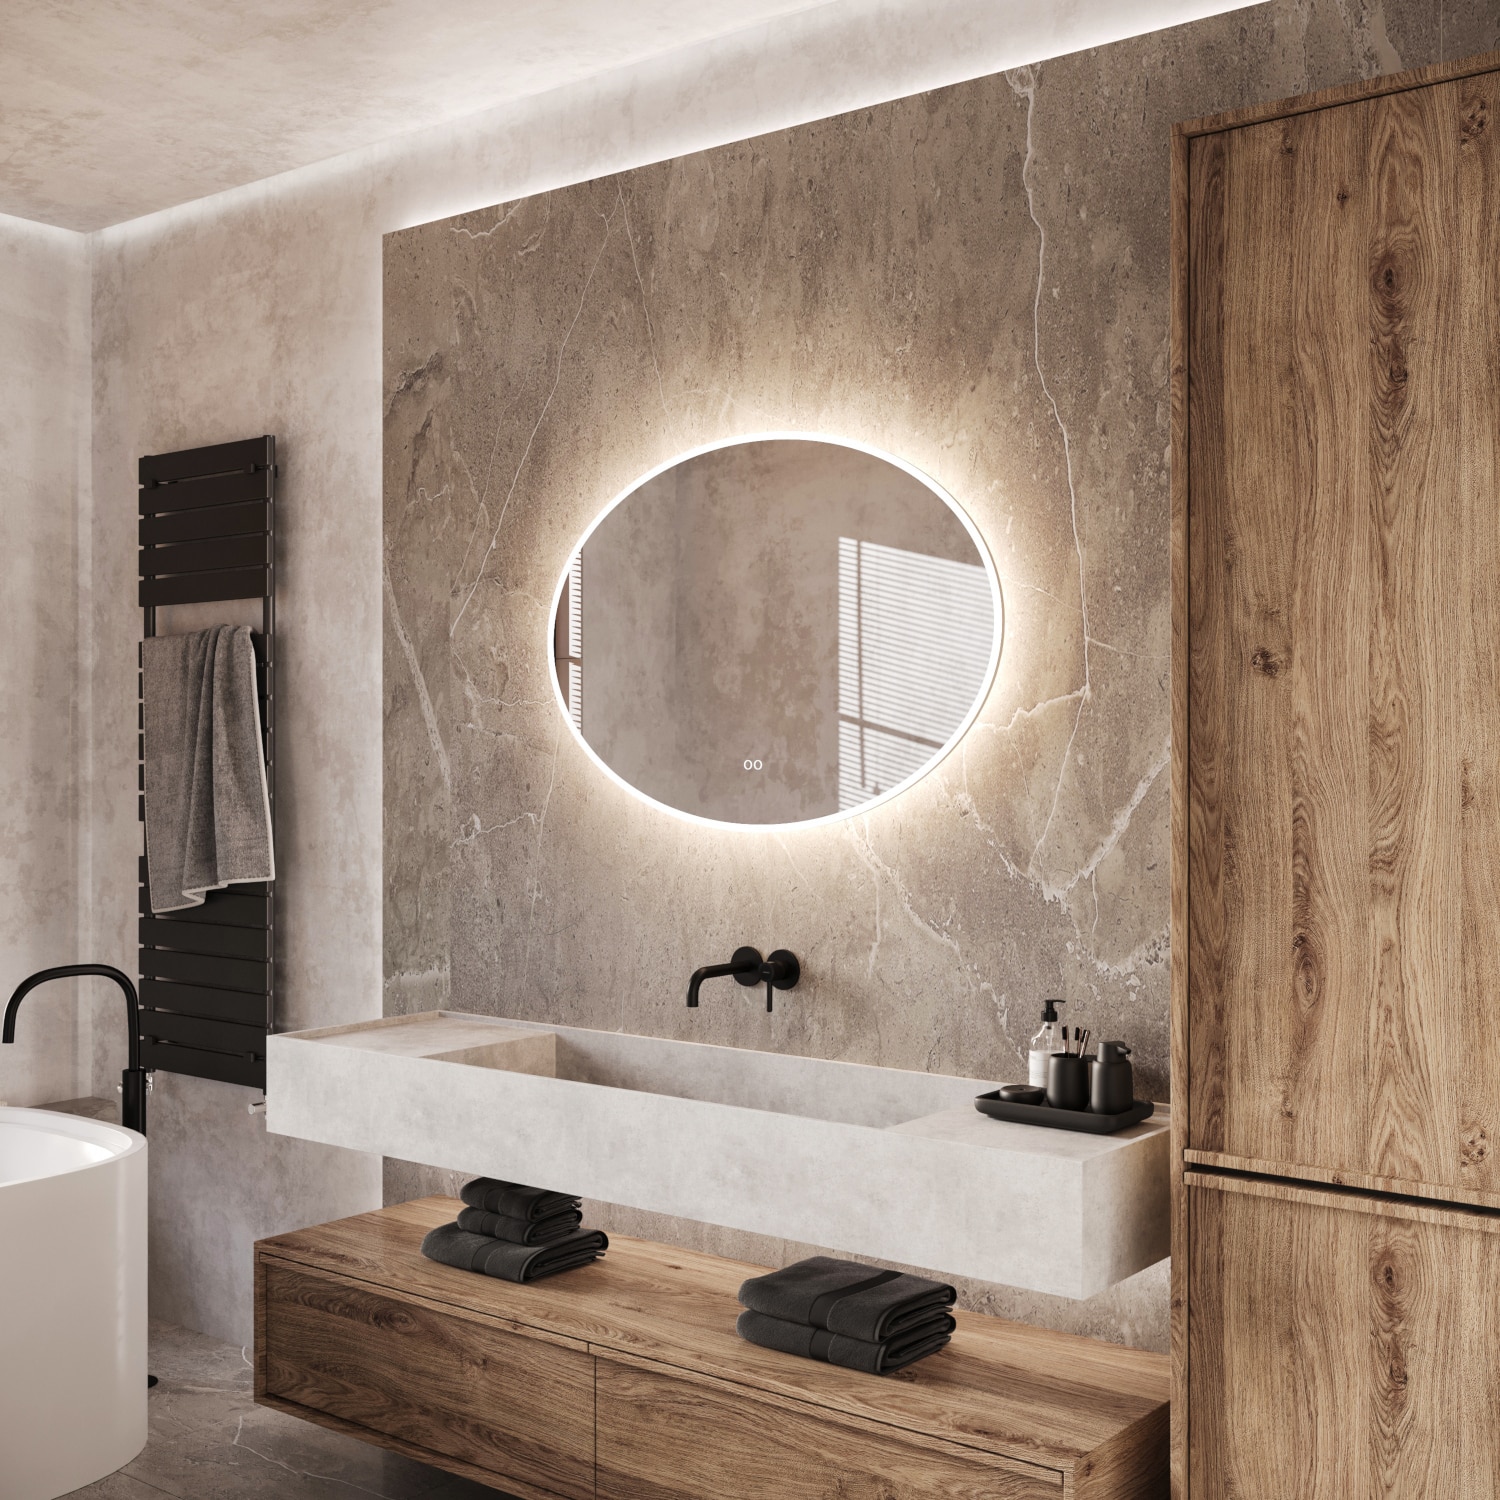 Deze ovalen badkamer spiegel is 100 cm breed en 70 cm hoog